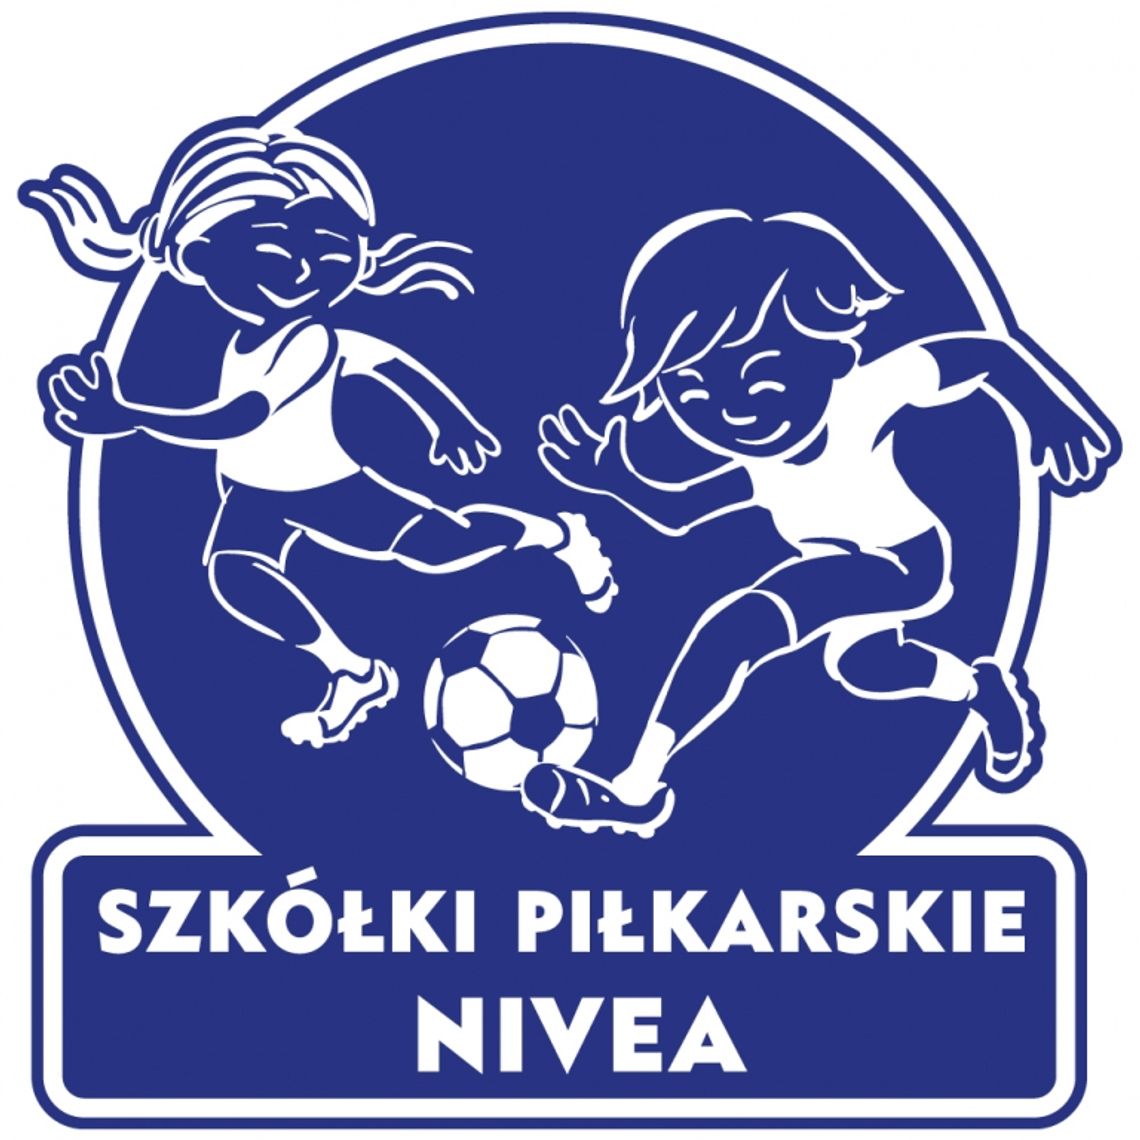 UKS Mazovia wśród najlepszych piłkarskich szkółek w Polsce